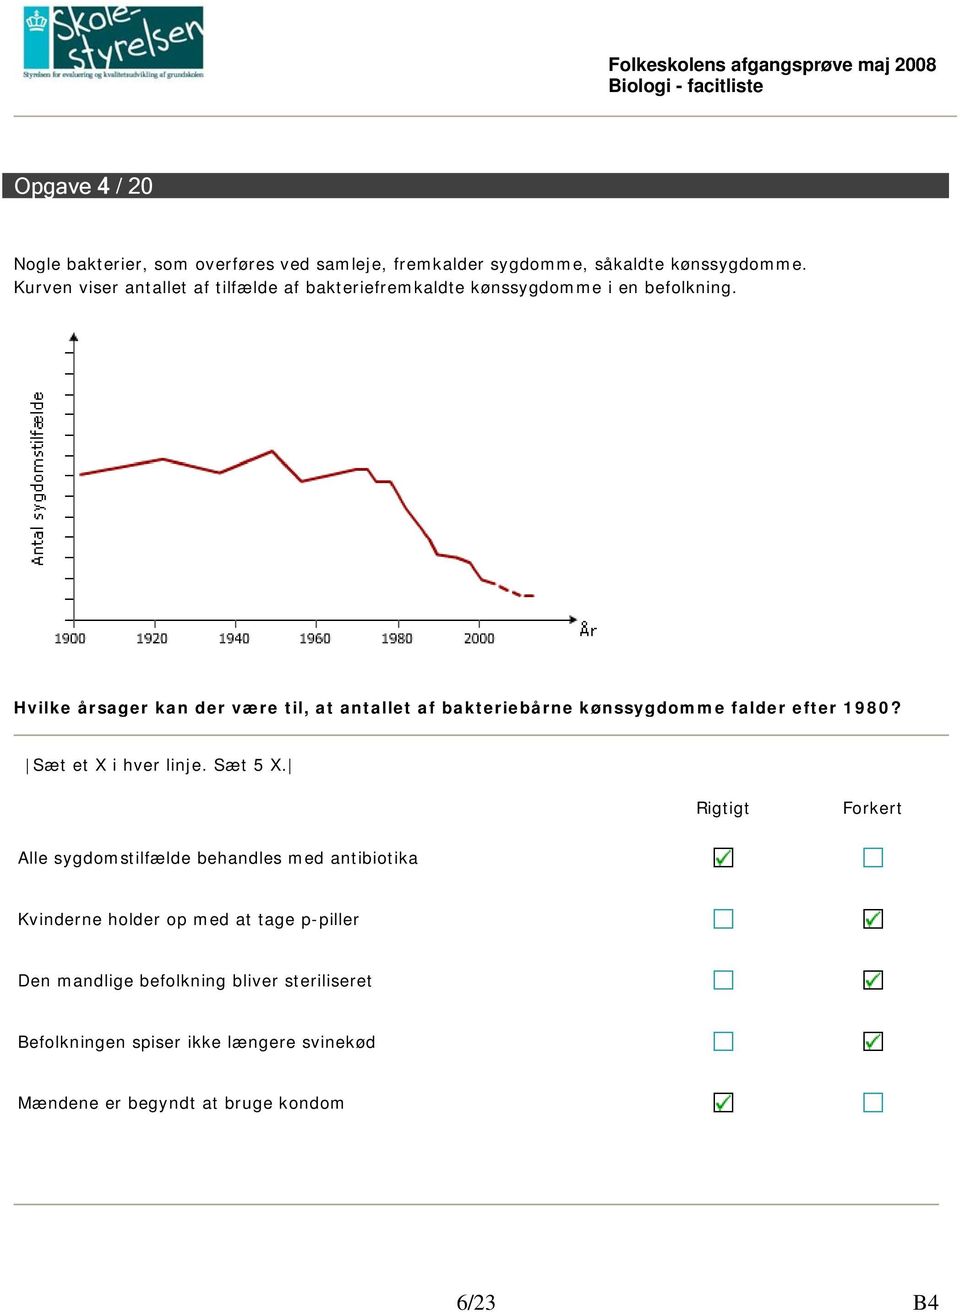 Hvilke årsager kan der være til, at antallet af bakteriebårne kønssygdomme falder efter 1980? Sæt et X i hver linje. Sæt 5 X.